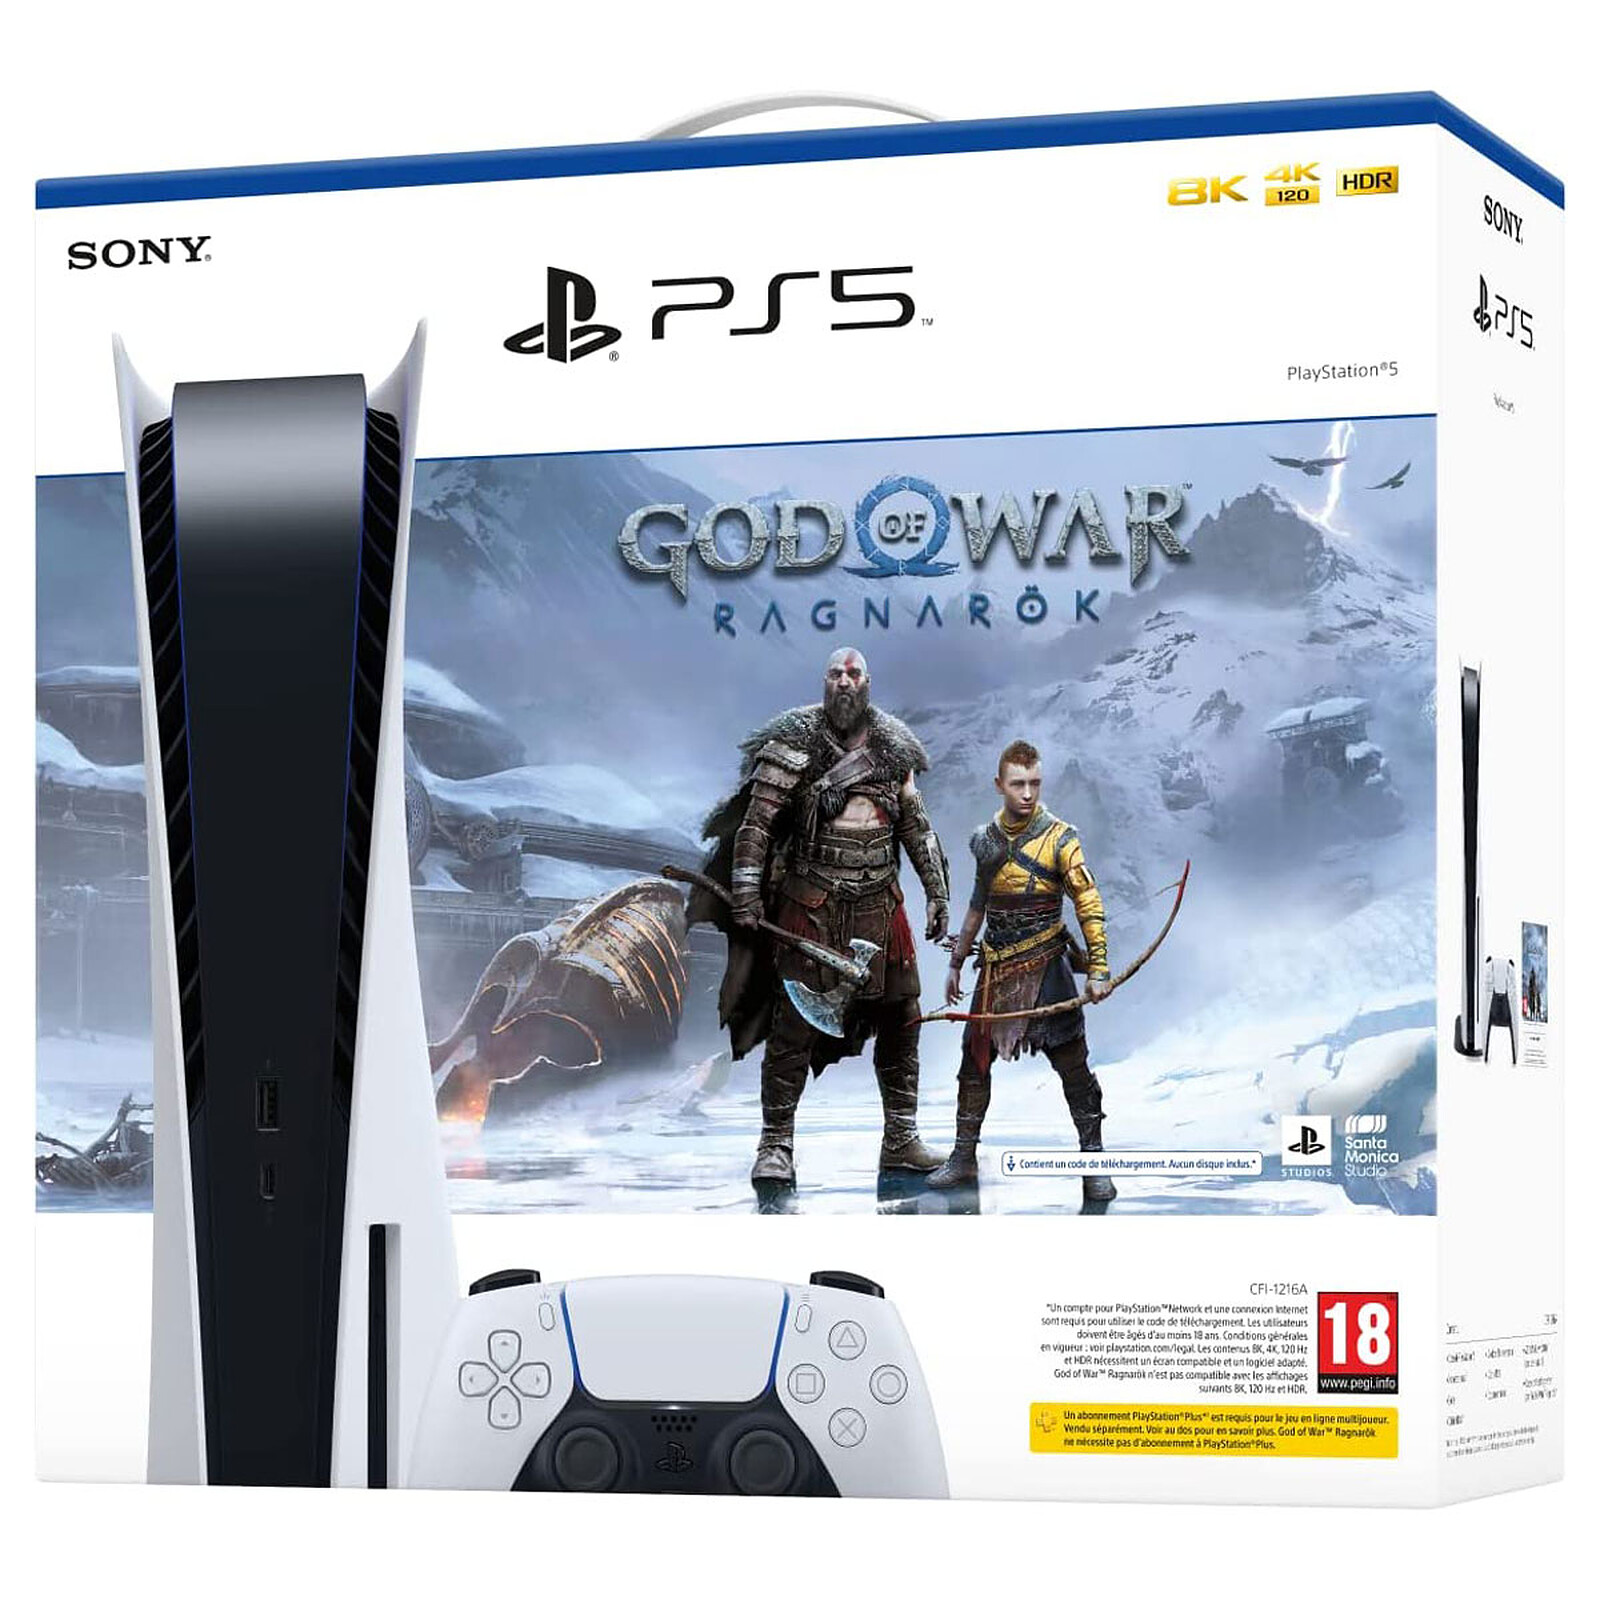 God of war Ragnarok PS4, Video Gaming, Video Games, PlayStation on